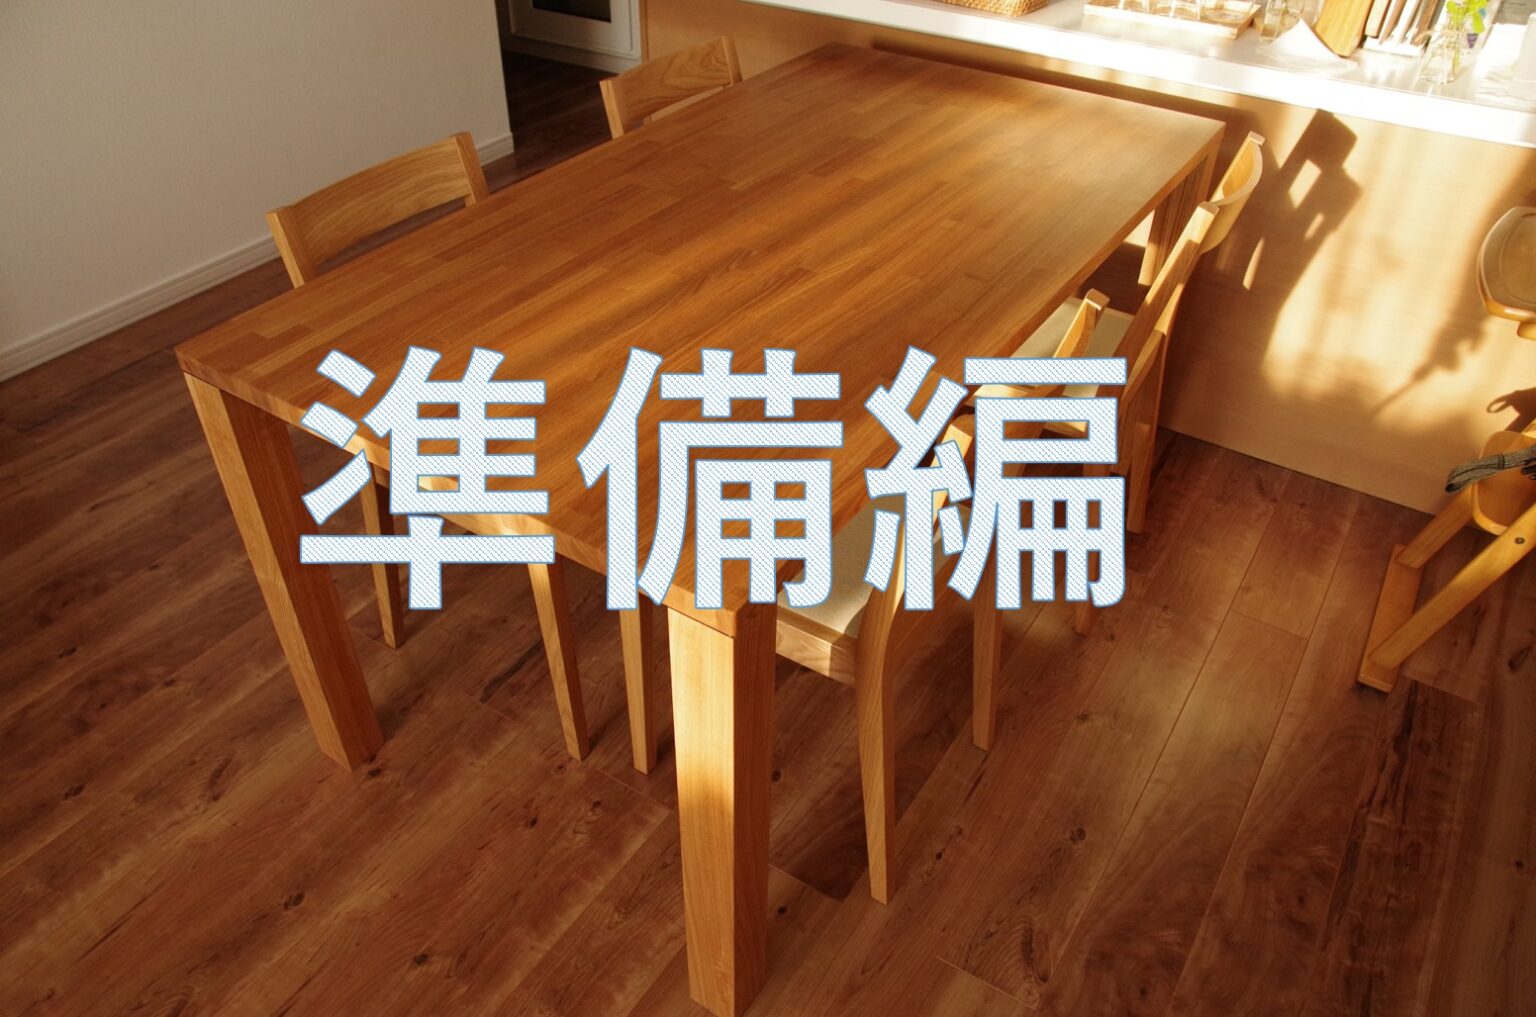 [DIY]天板に脚を取り付けるだけ！簡単なダイニングテーブルの作り方[準備編] とーちゃんのメモブログ